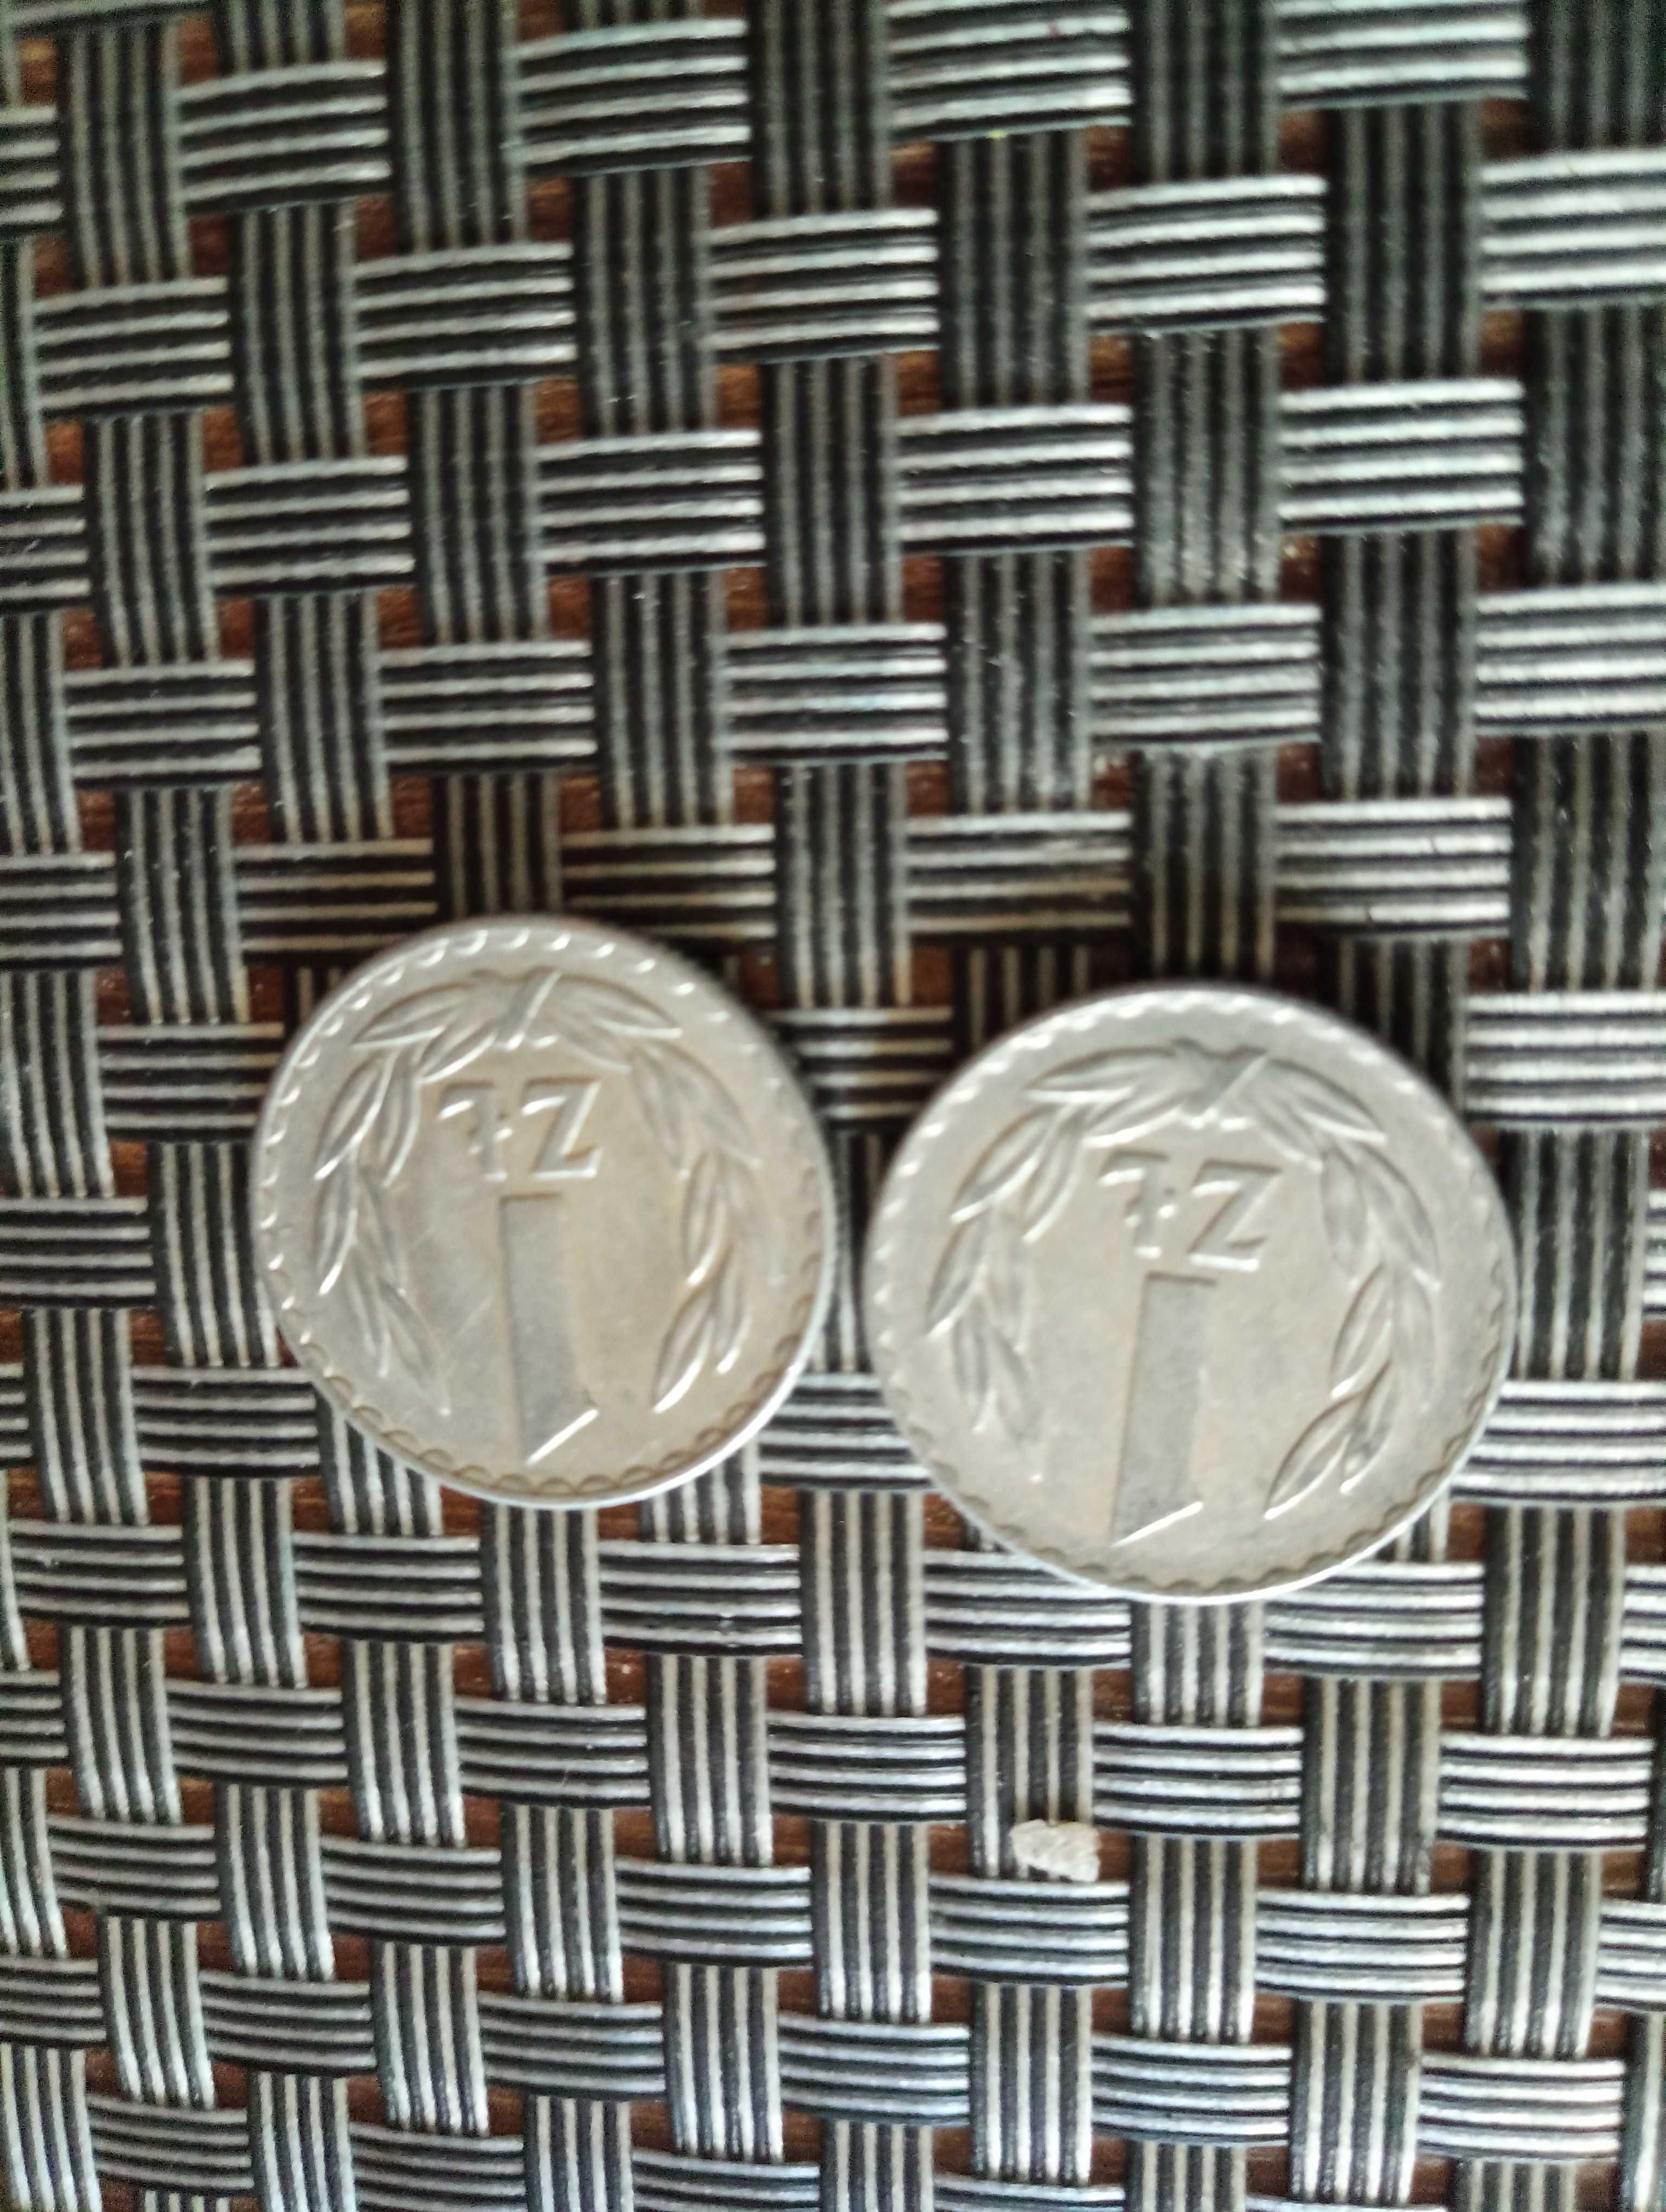 Sprzedam dwie monety 1 zl 1976 bzm cena za dwie